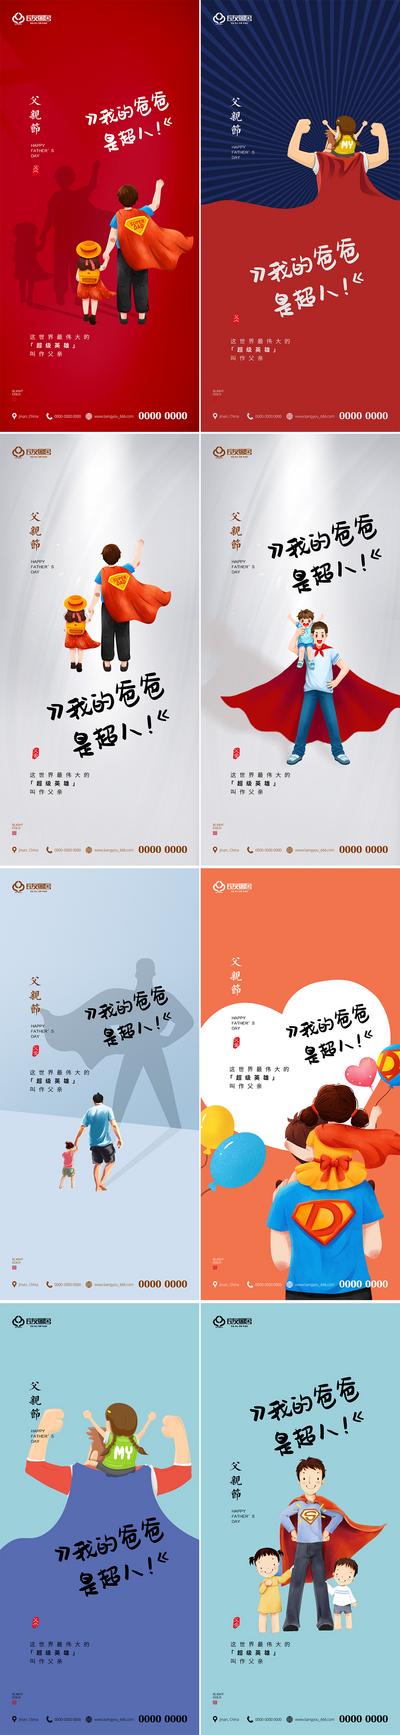 南门网 海报 房地产 公历节日 父亲节 超人 插画 系列